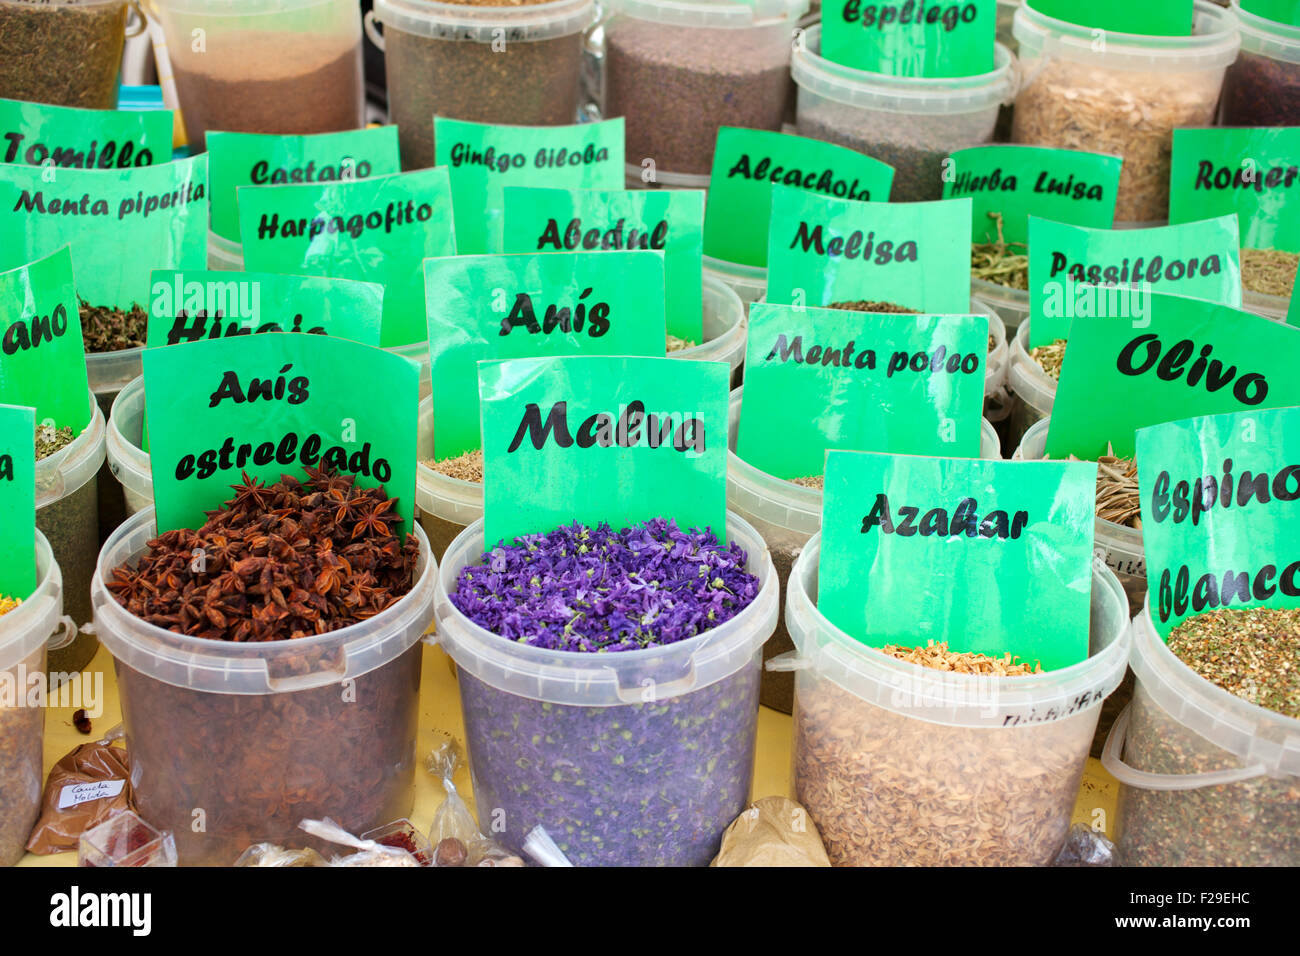 Hierbas medicinales en un mercado callejero Foto de stock